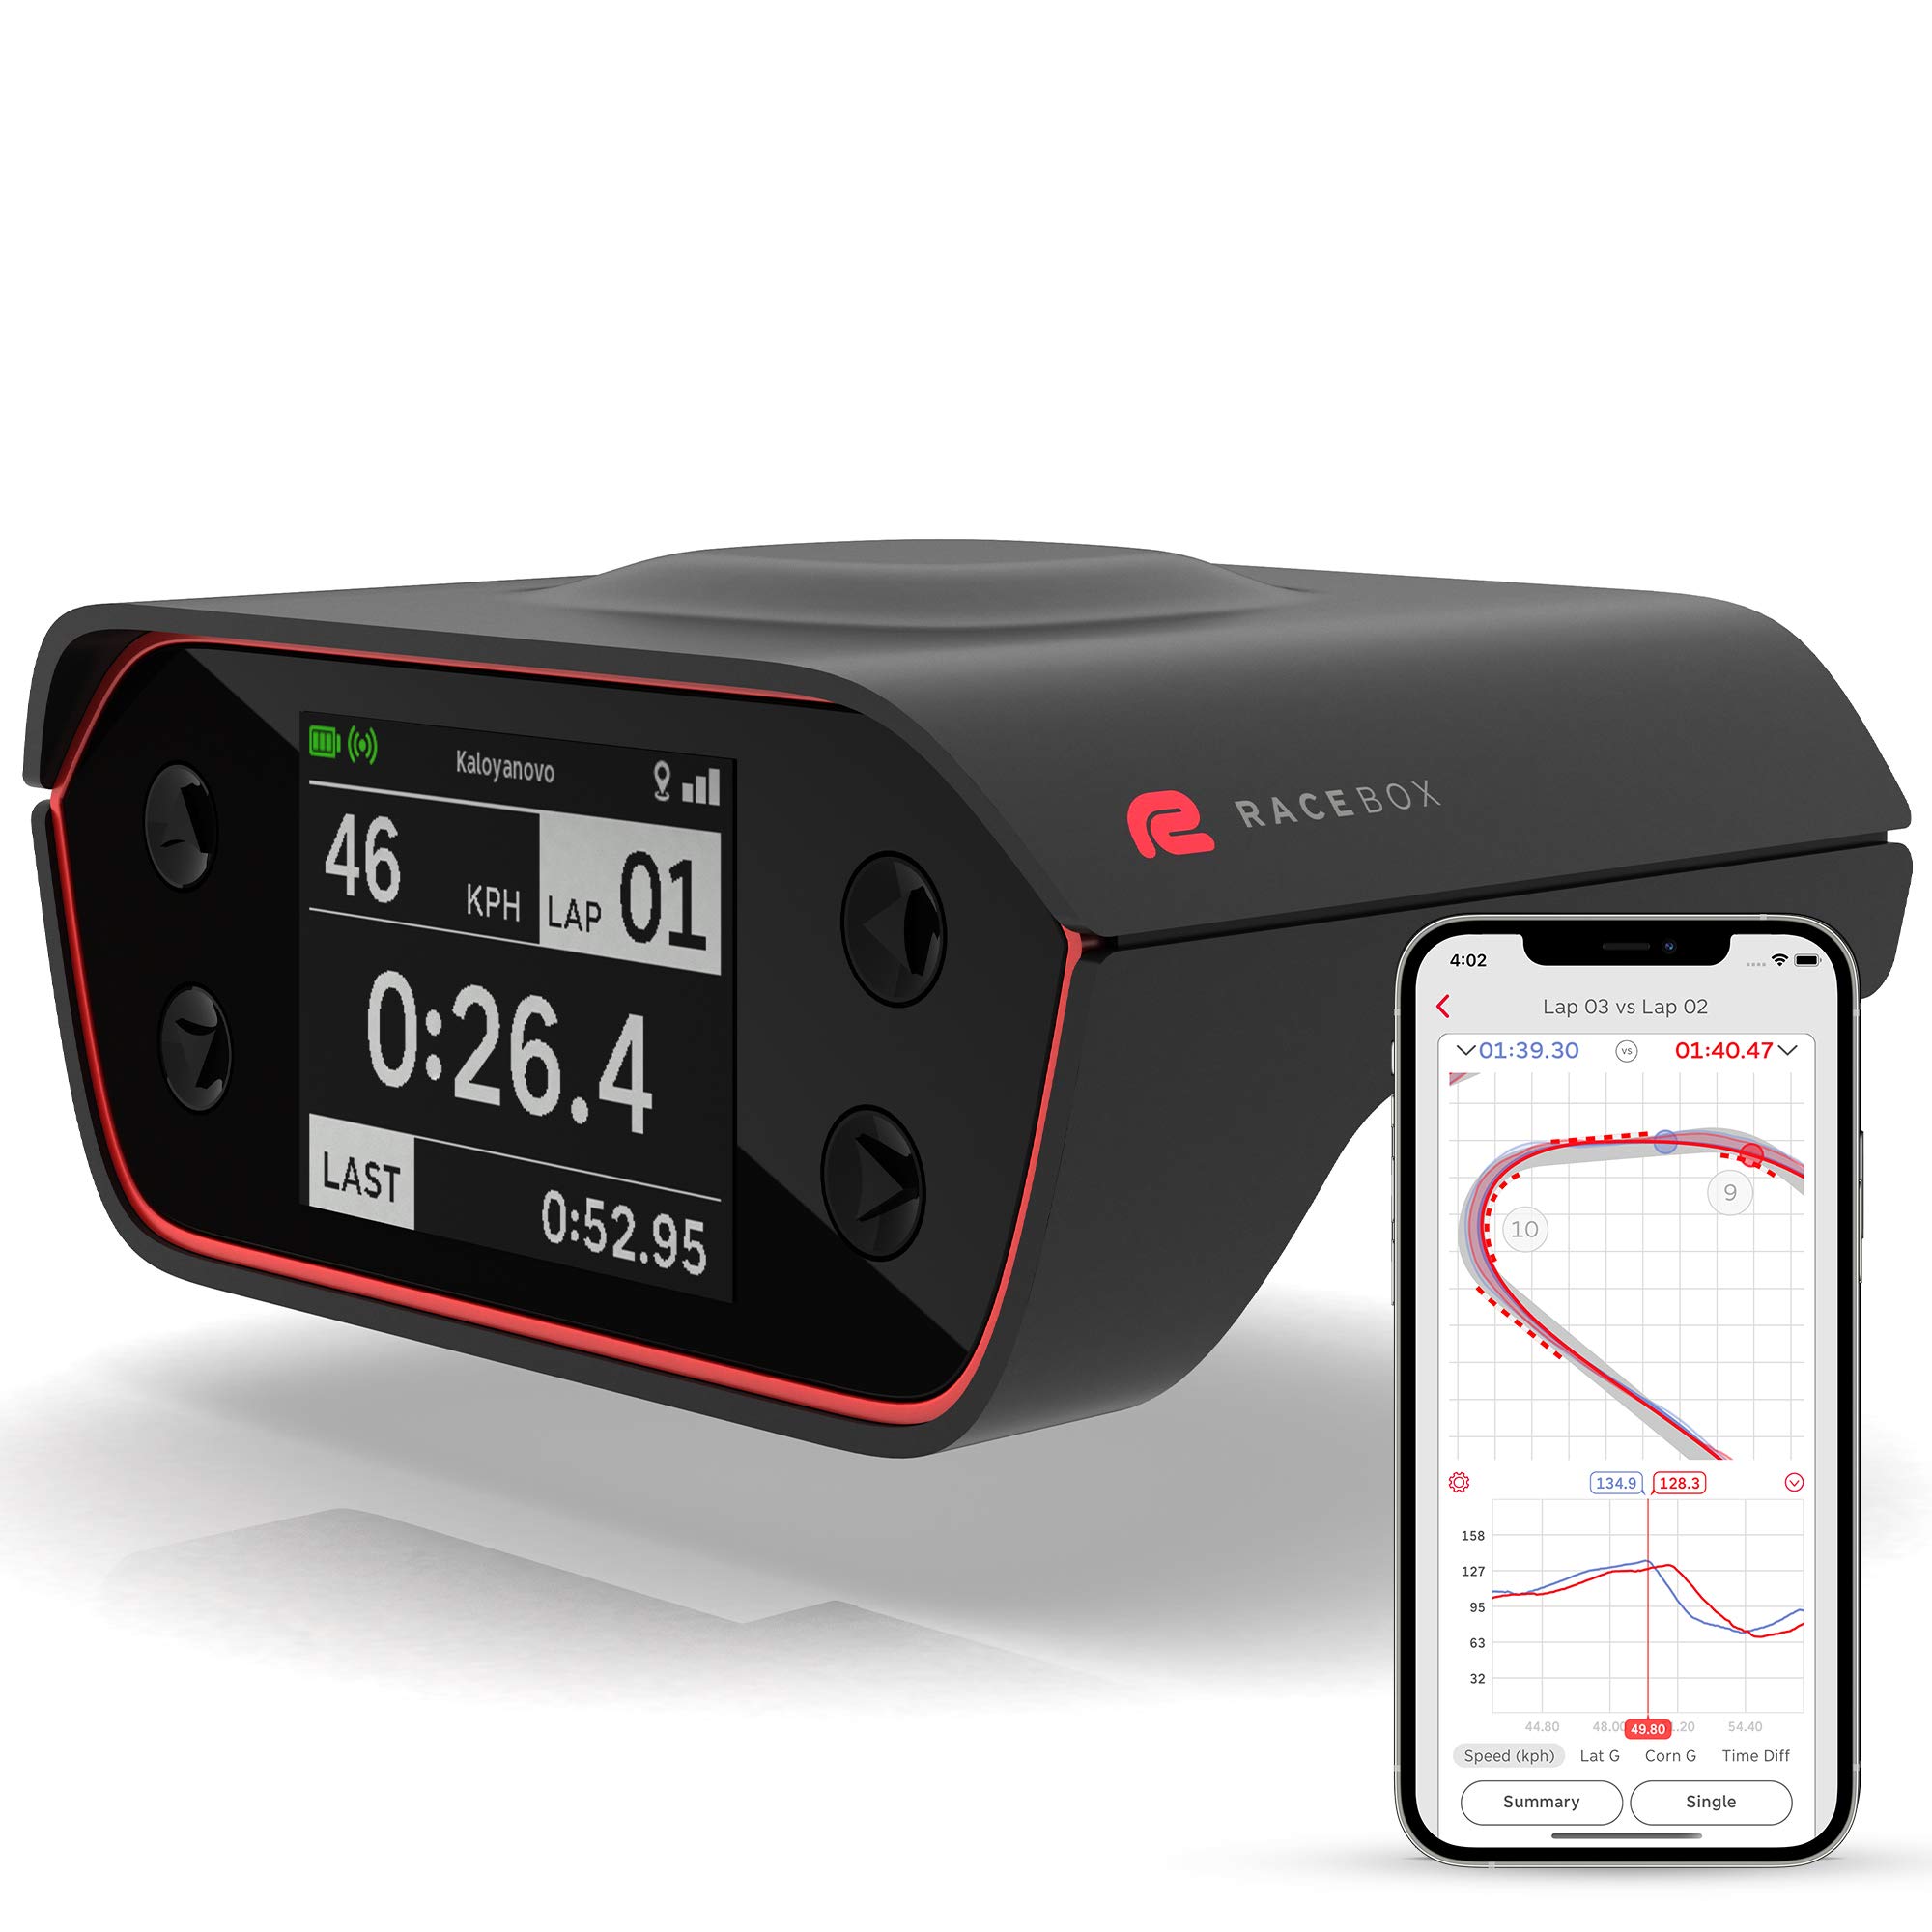 RaceBox Caixa de medidor de desempenho oficial baseada em GPS de 10 Hz com aplicativo móvel - cronômetro de volta do carro e medidor de arrasto - registrador de dados do acelerômetro de corrida